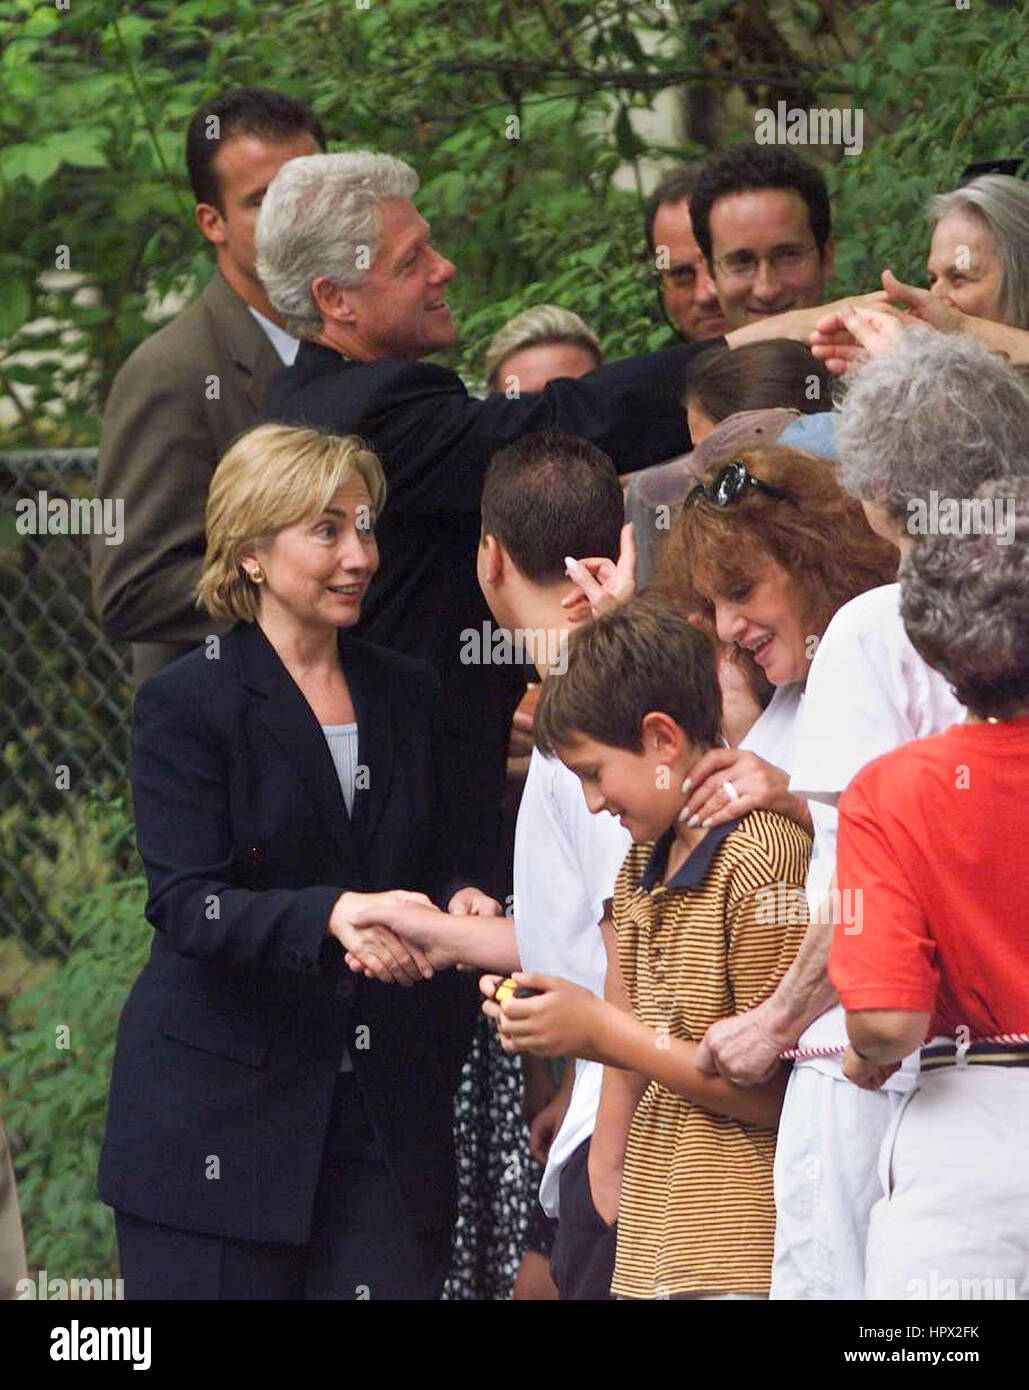 Präsident Bill Clinton und First Lady Hillary Clinton begrüßen die Bewohner von New Rochelle, New York, während sie am 15. August 1999 auf der Hausjagd waren. Stockfoto